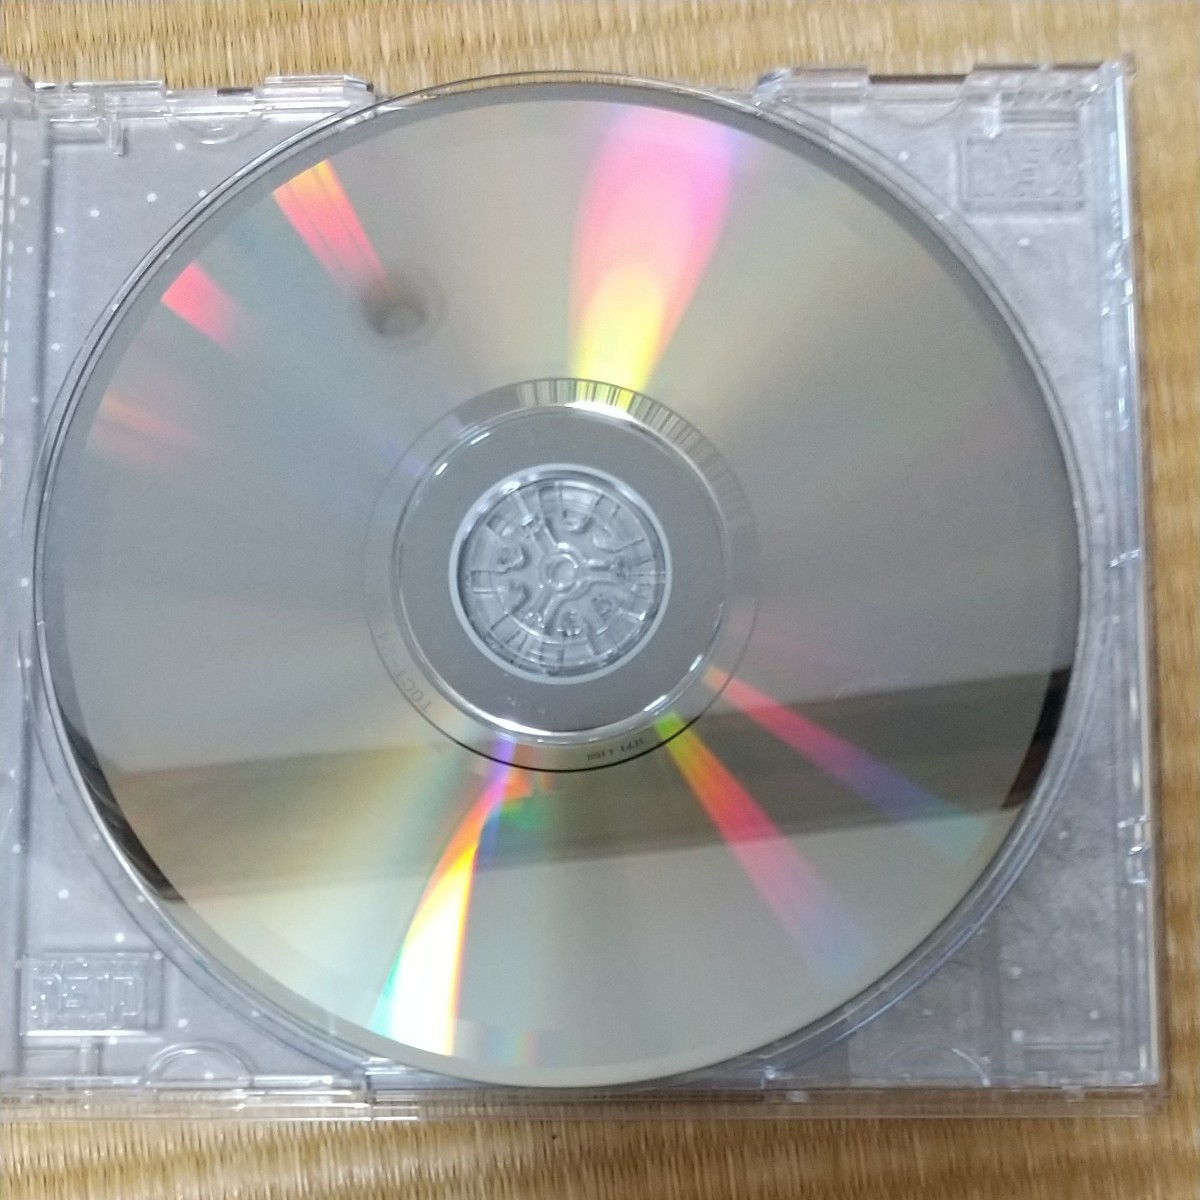 松任谷由実音楽CD Frozen Roses